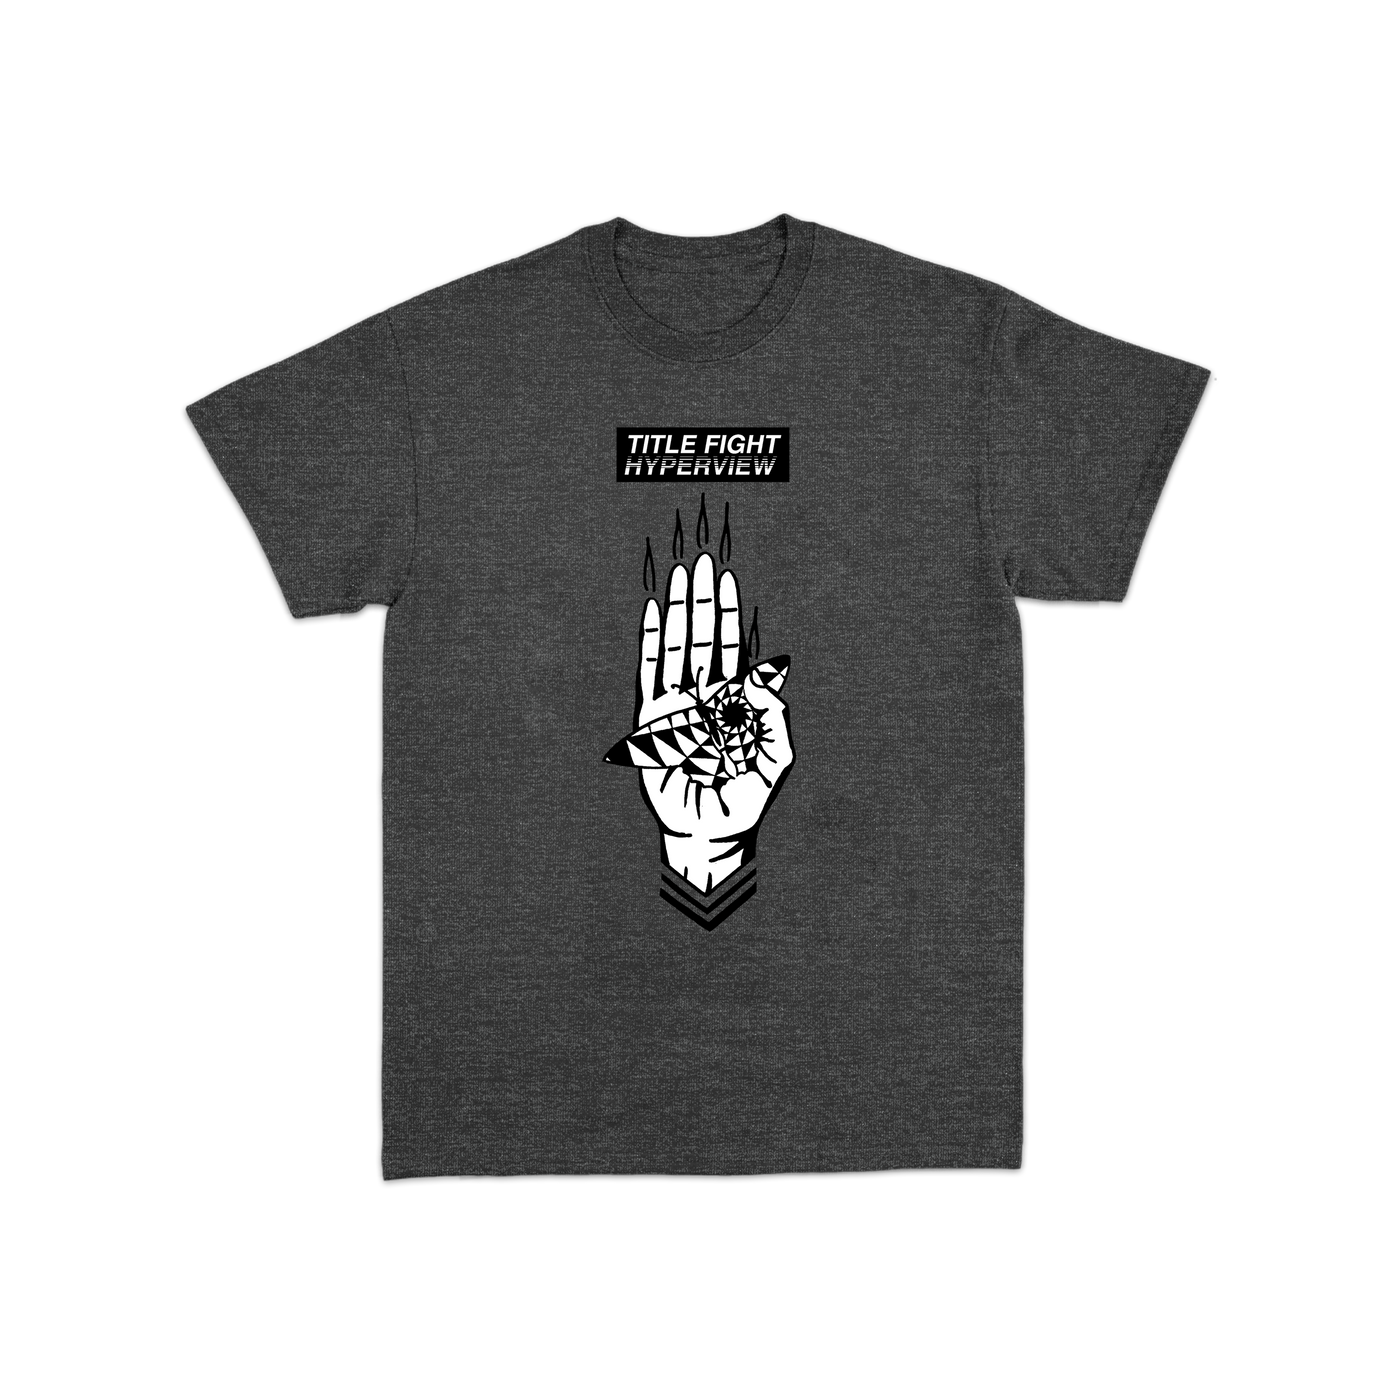 Hyperview Hand T-Shirt